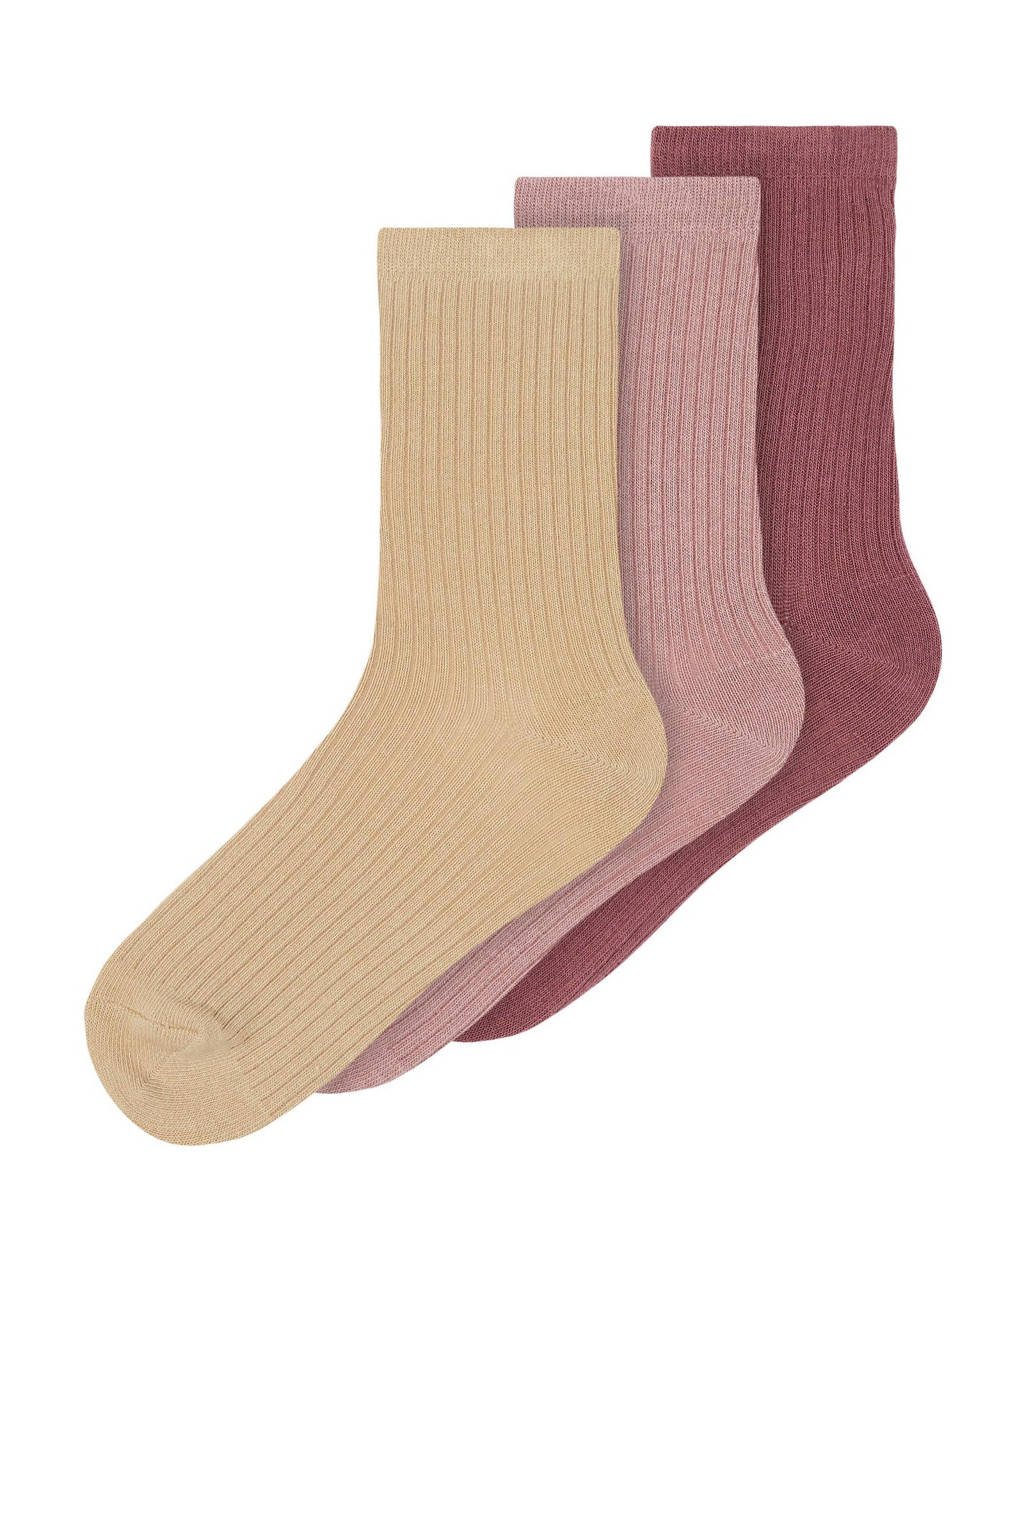 NAME IT KIDS sokken NKFSTORM - set van 3 roze, Roze/geel